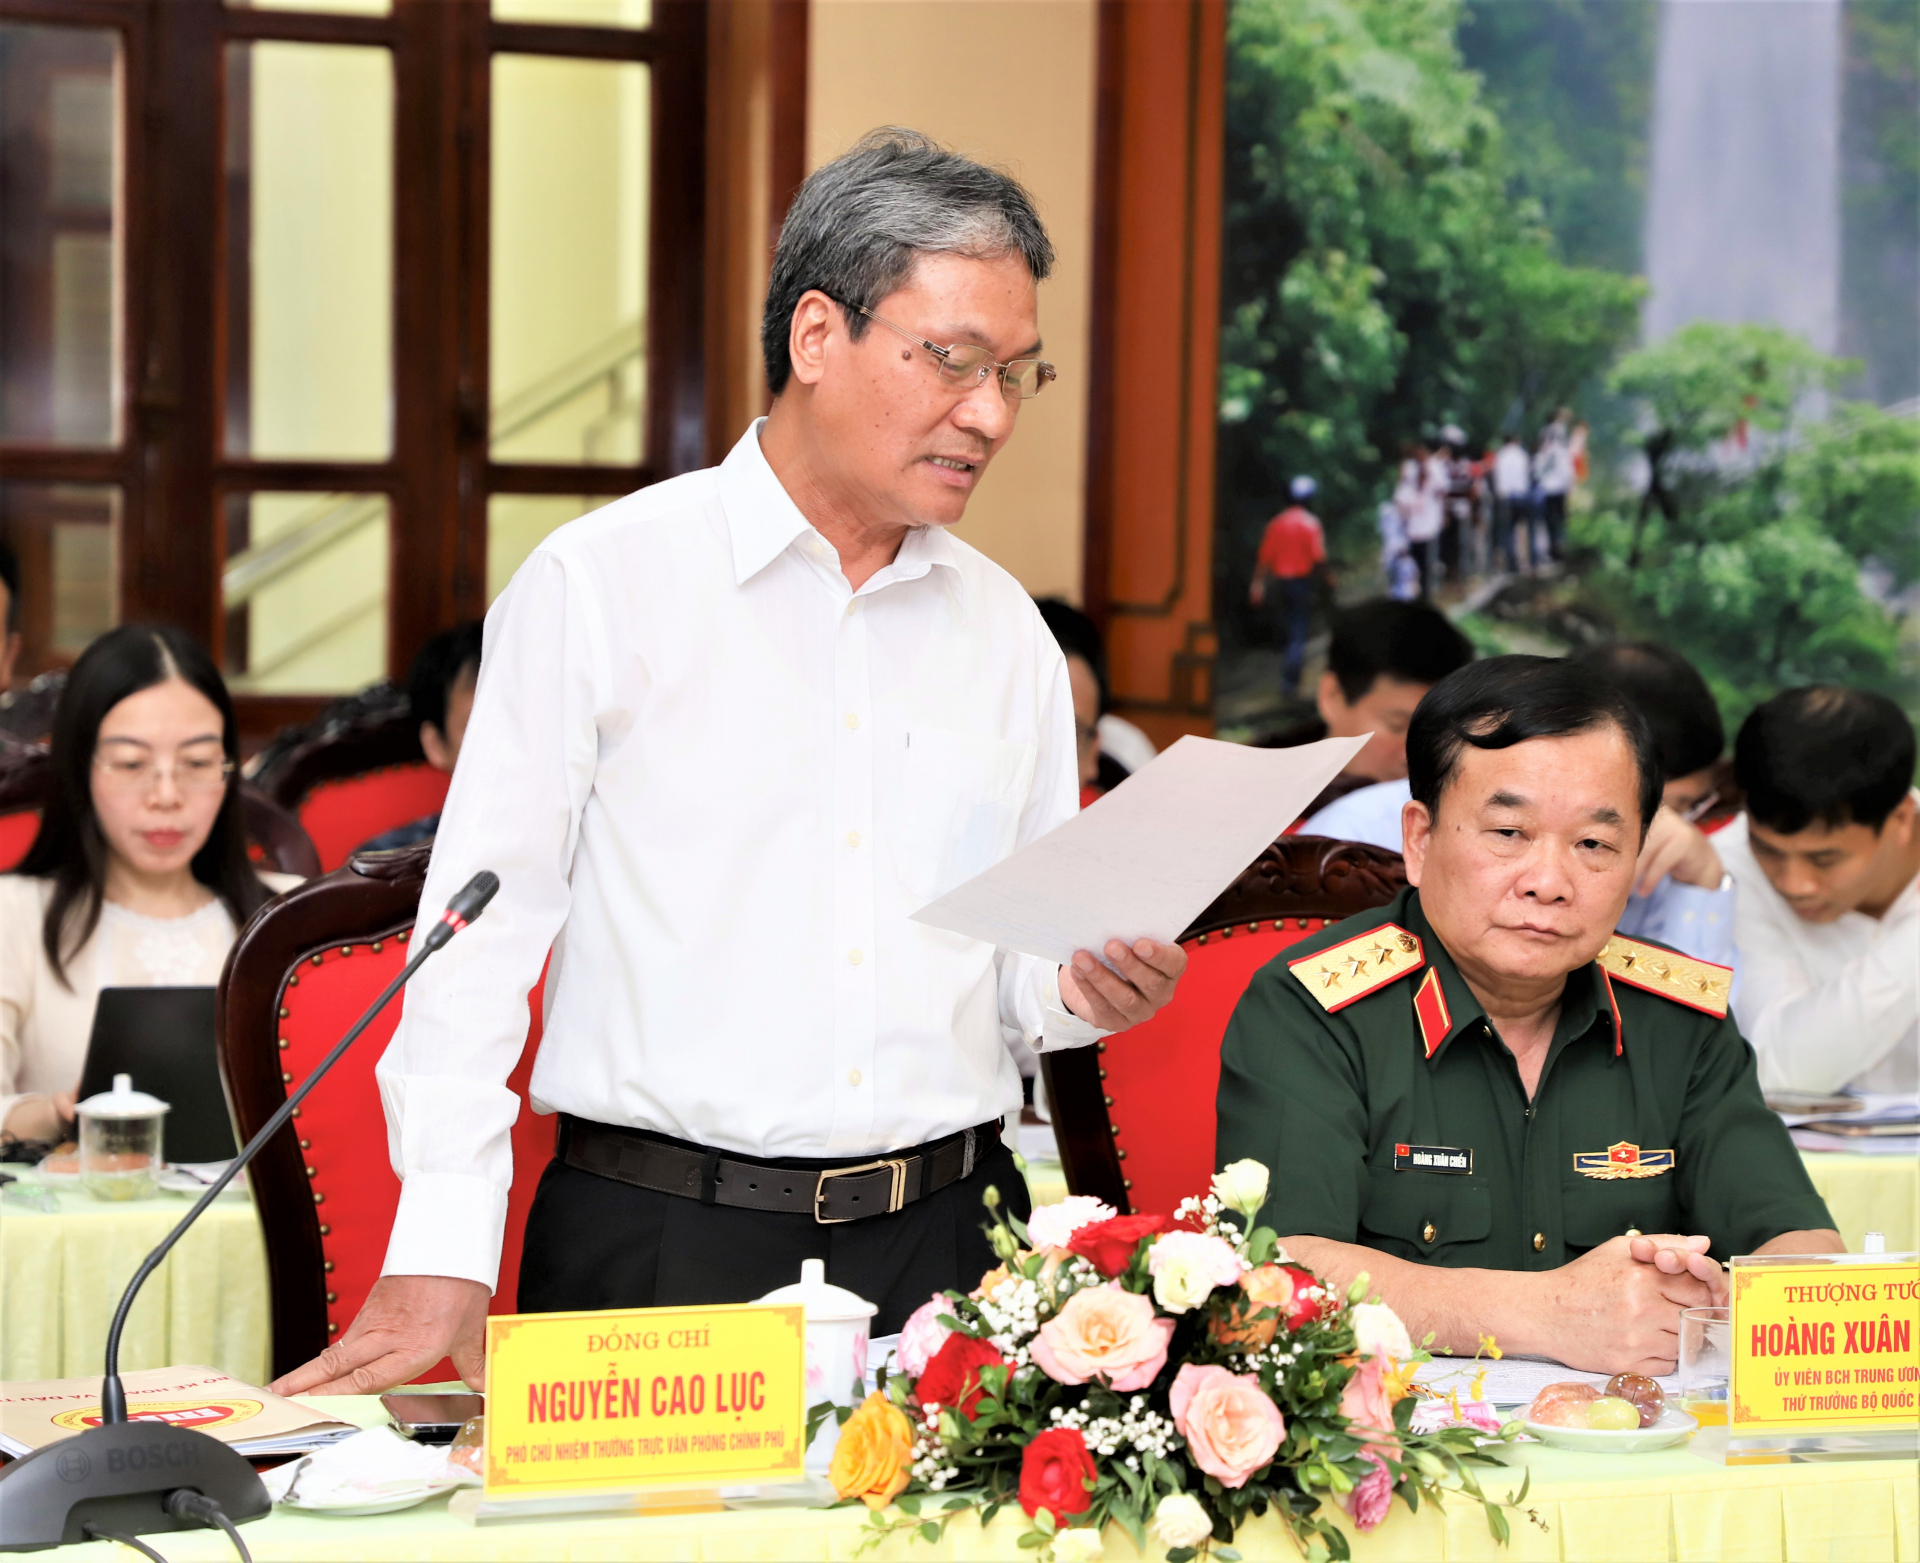 Phó Chủ nhiệm Thường trực Văn phòng Chính phủ Nguyễn Cao Lục phát biểu tại buổi làm việc